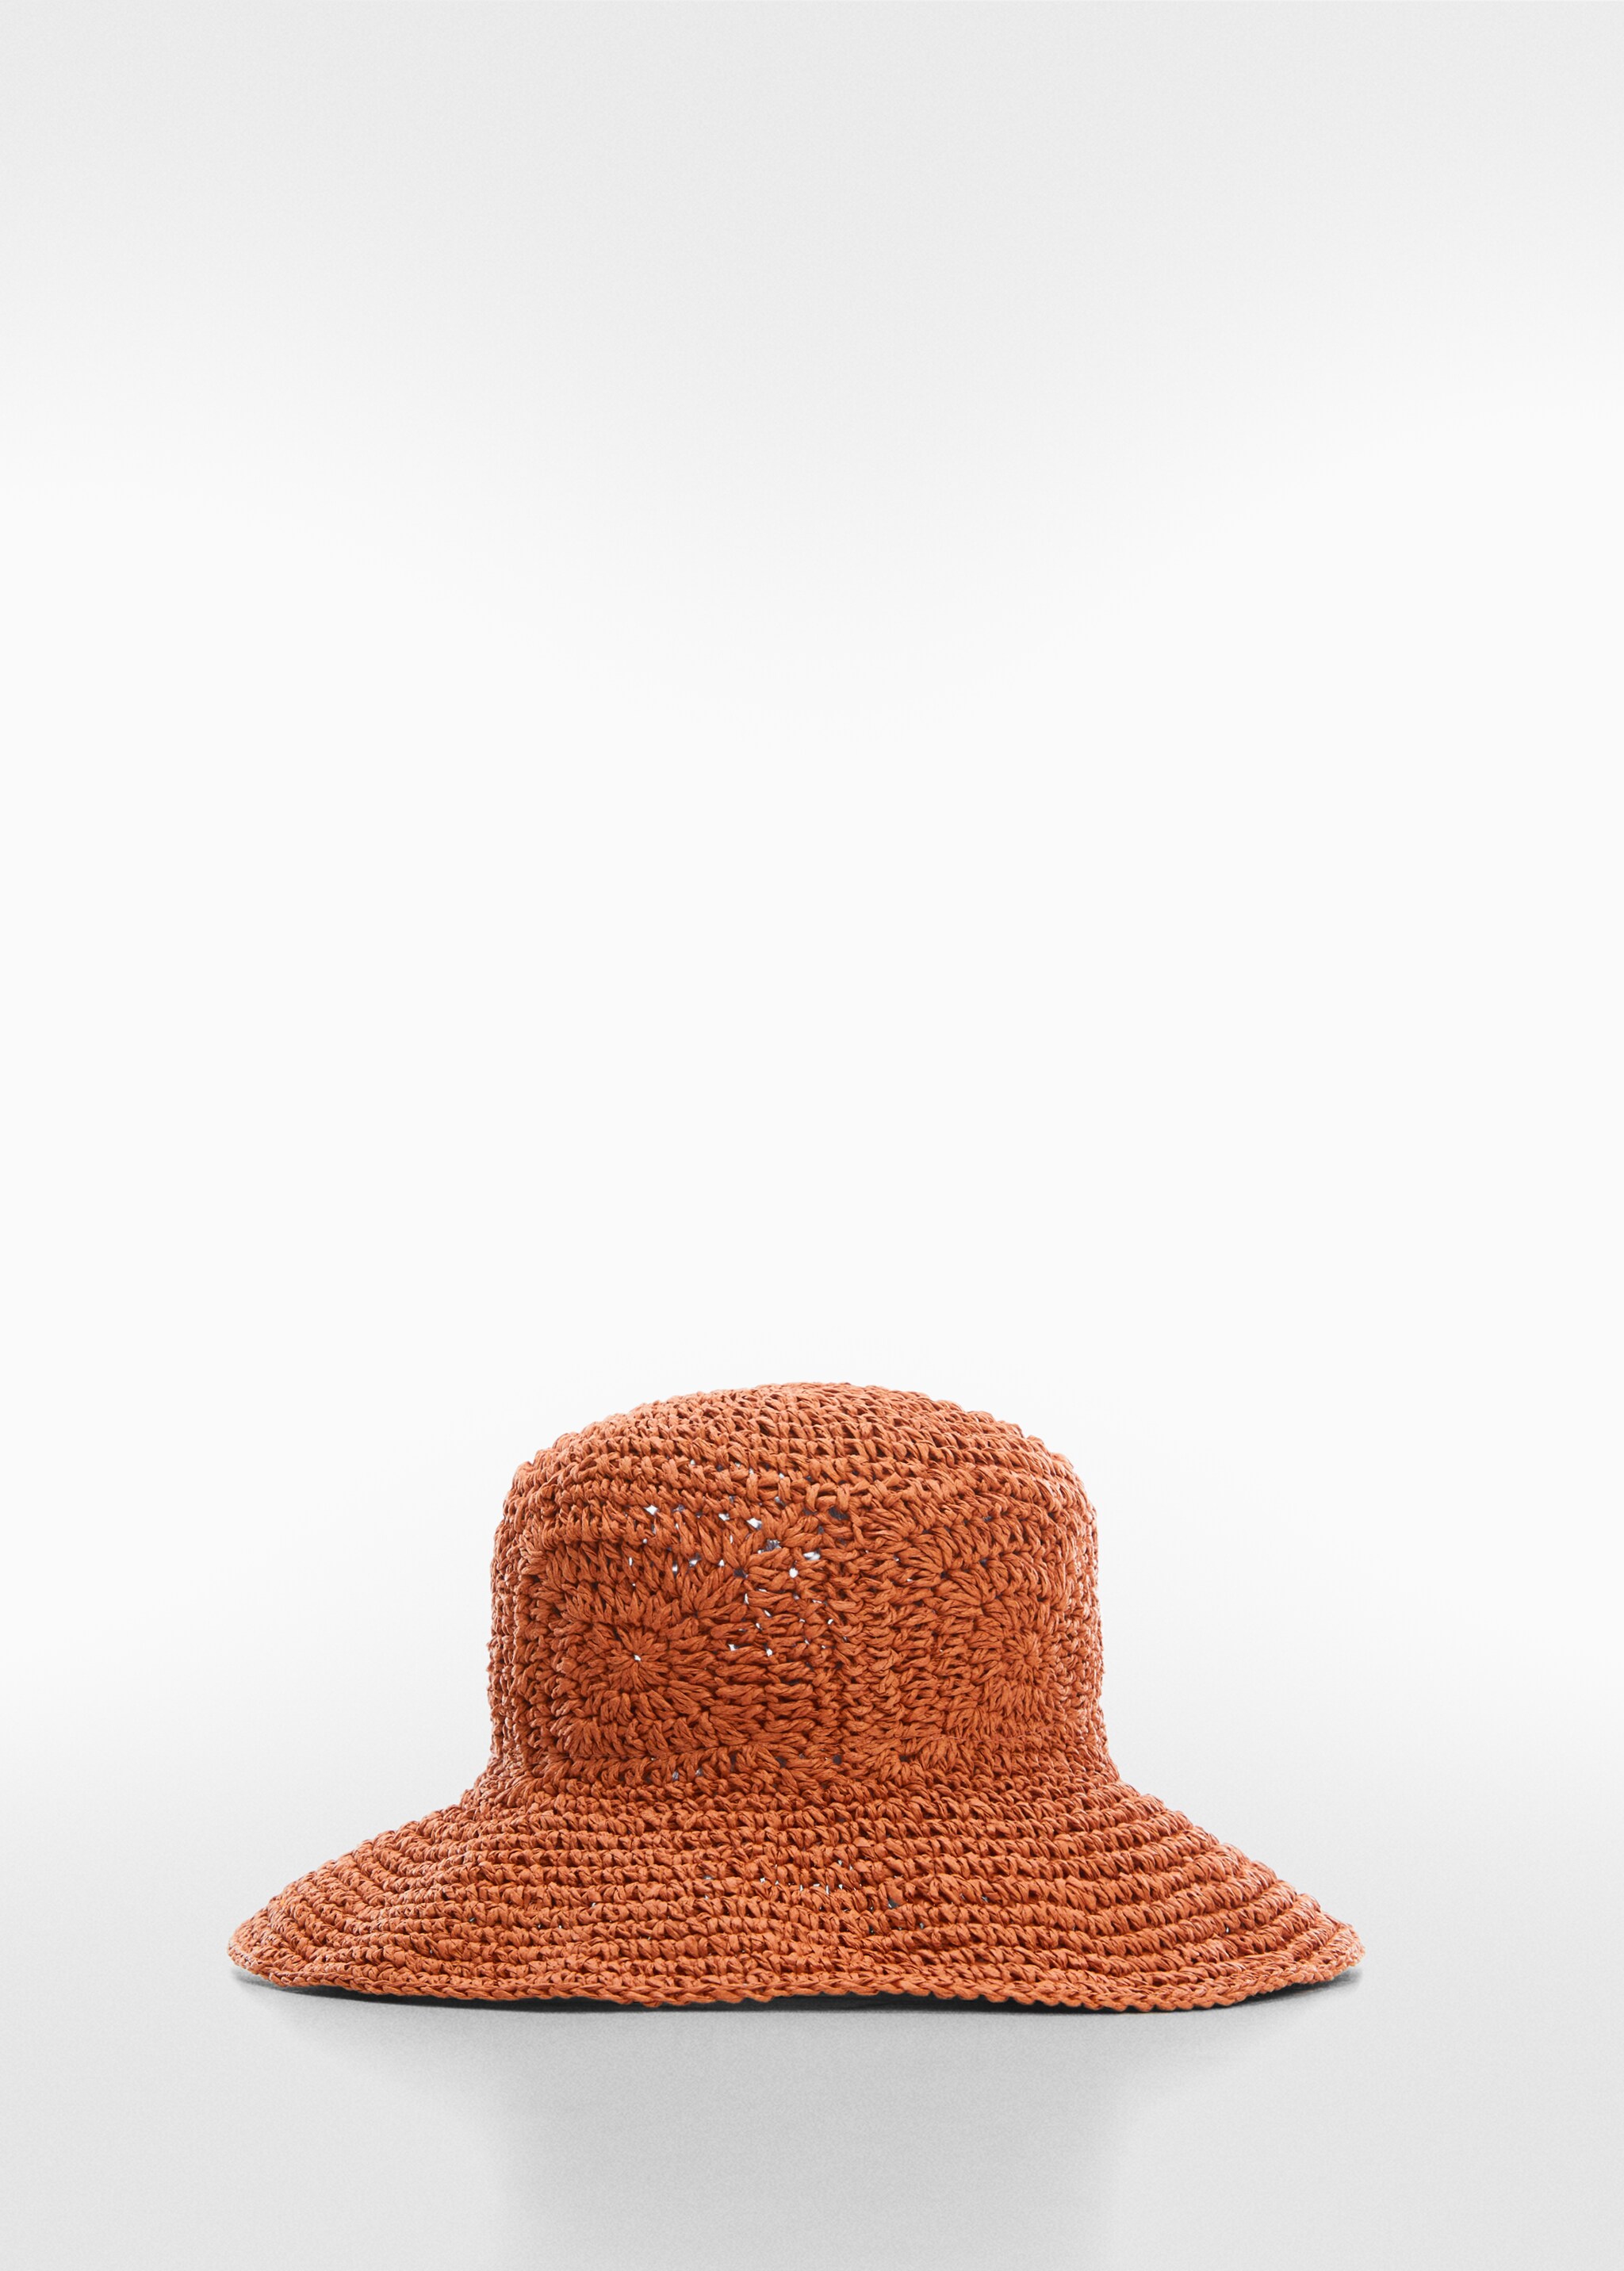 Sombrero fibra natural crochet  - Artículo sin modelo